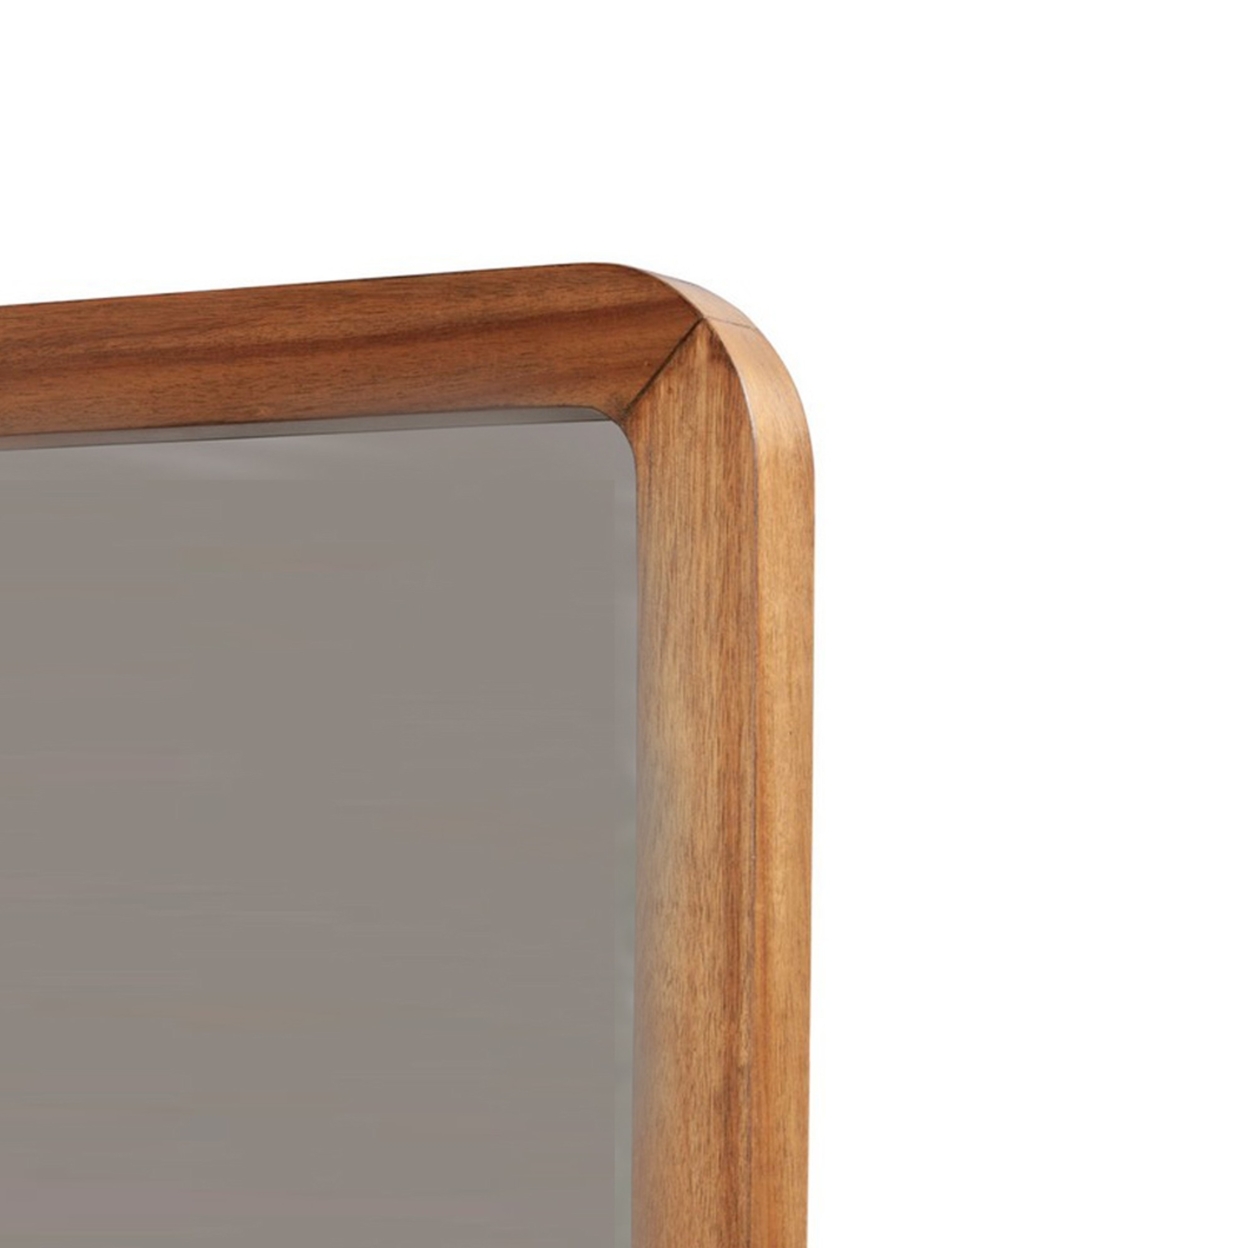 Neo 37 X 40 Rectangular Dresser Mirror, Mahogany Wood, Rich Honey Brown- Saltoro Sherpi